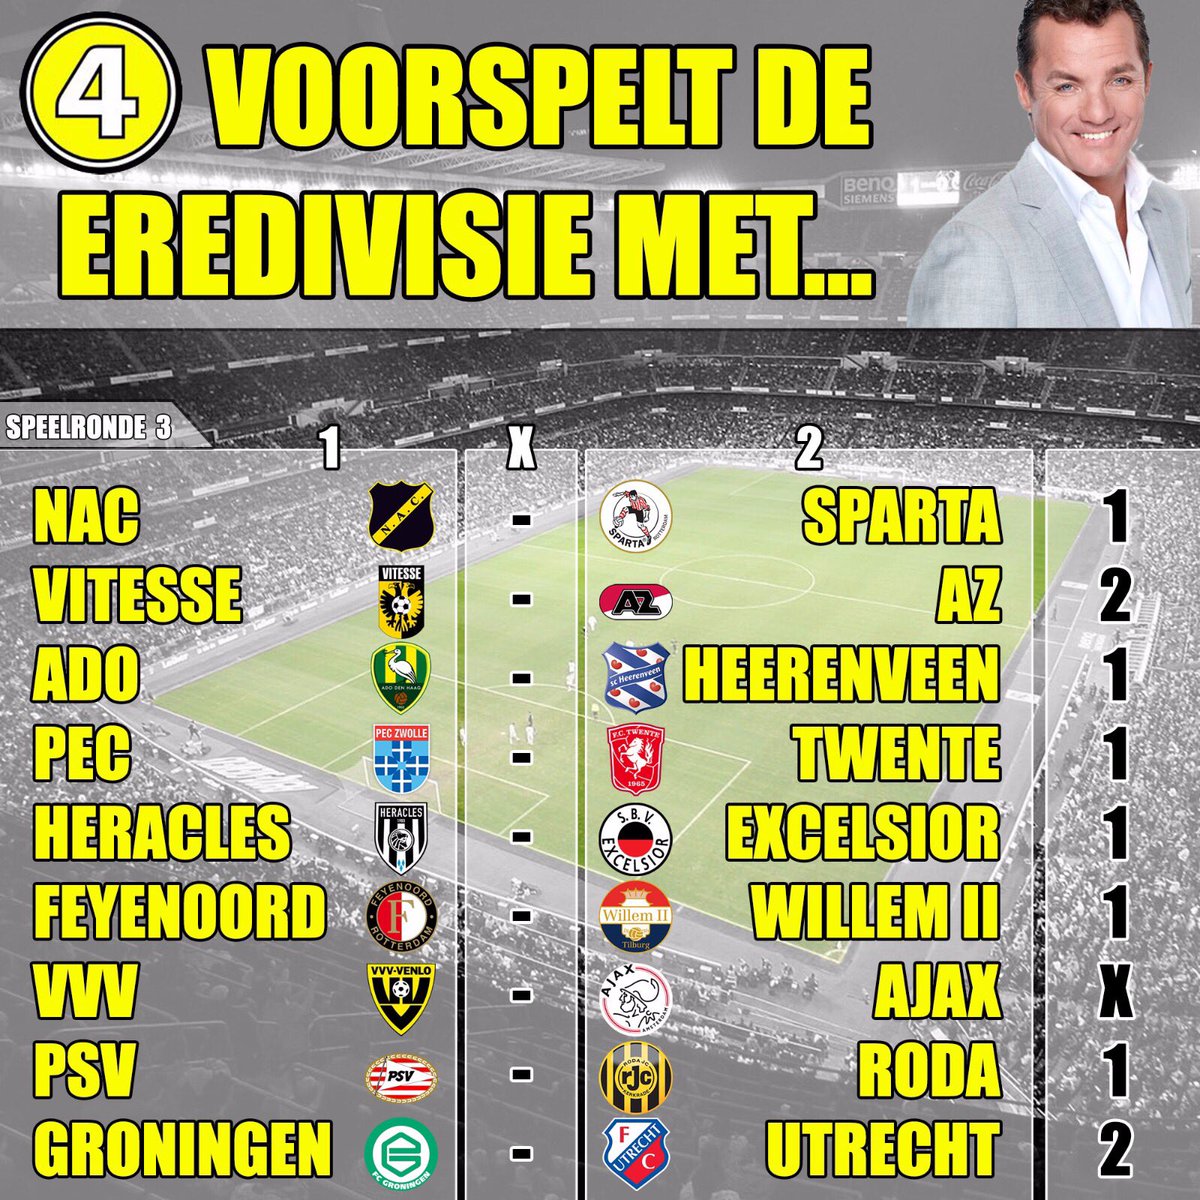 433 voorspelt de Eredivisie met... @JohndeBever!